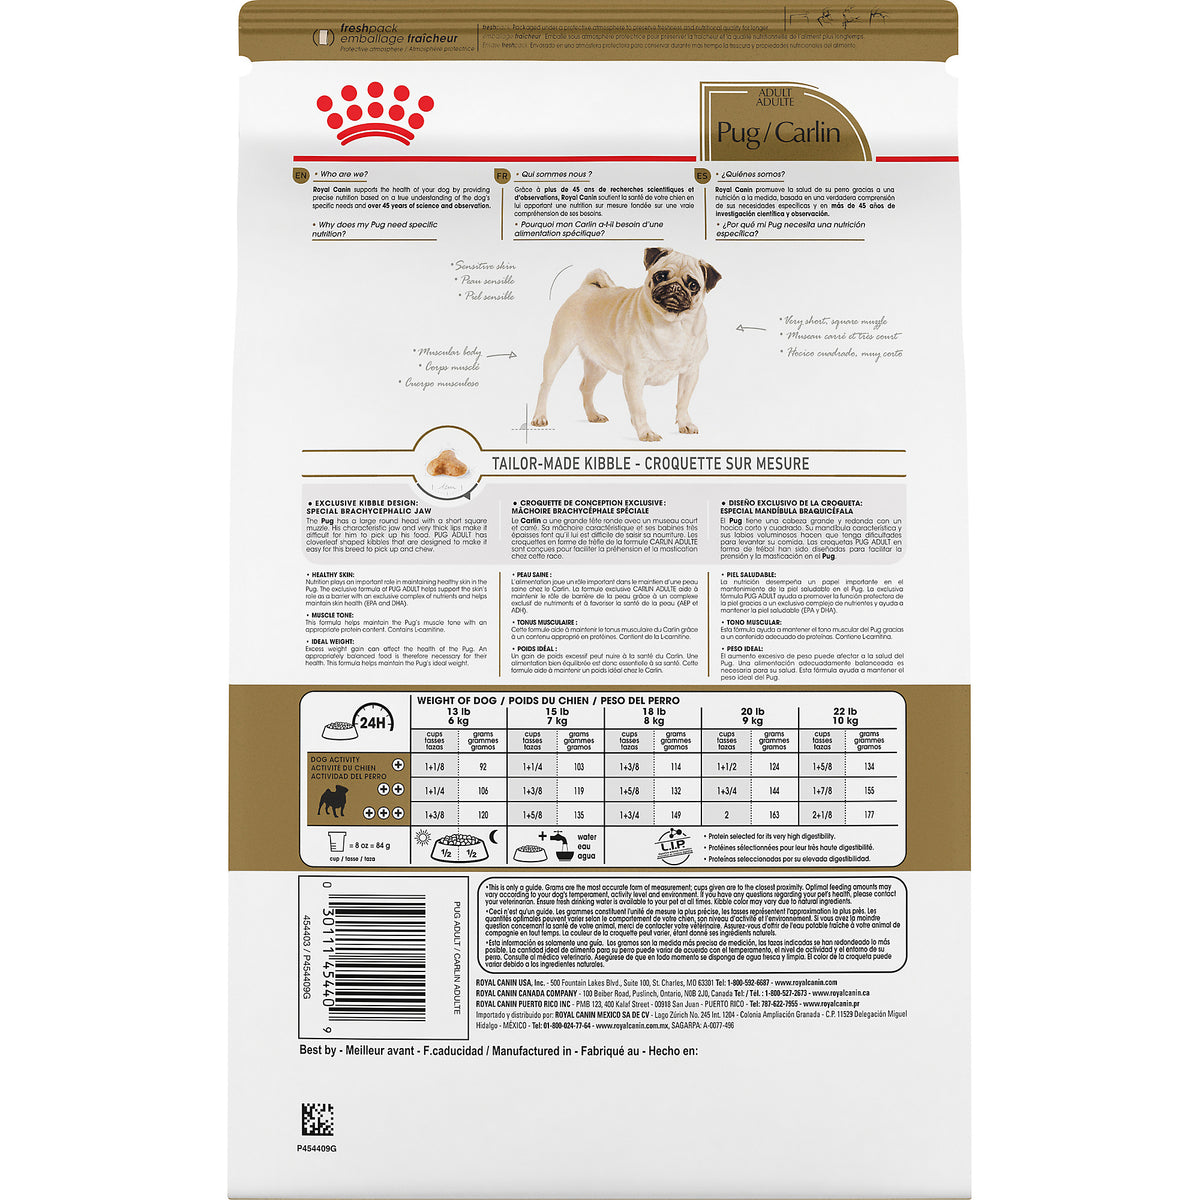 Royal Canin Adult Pug Dog Food